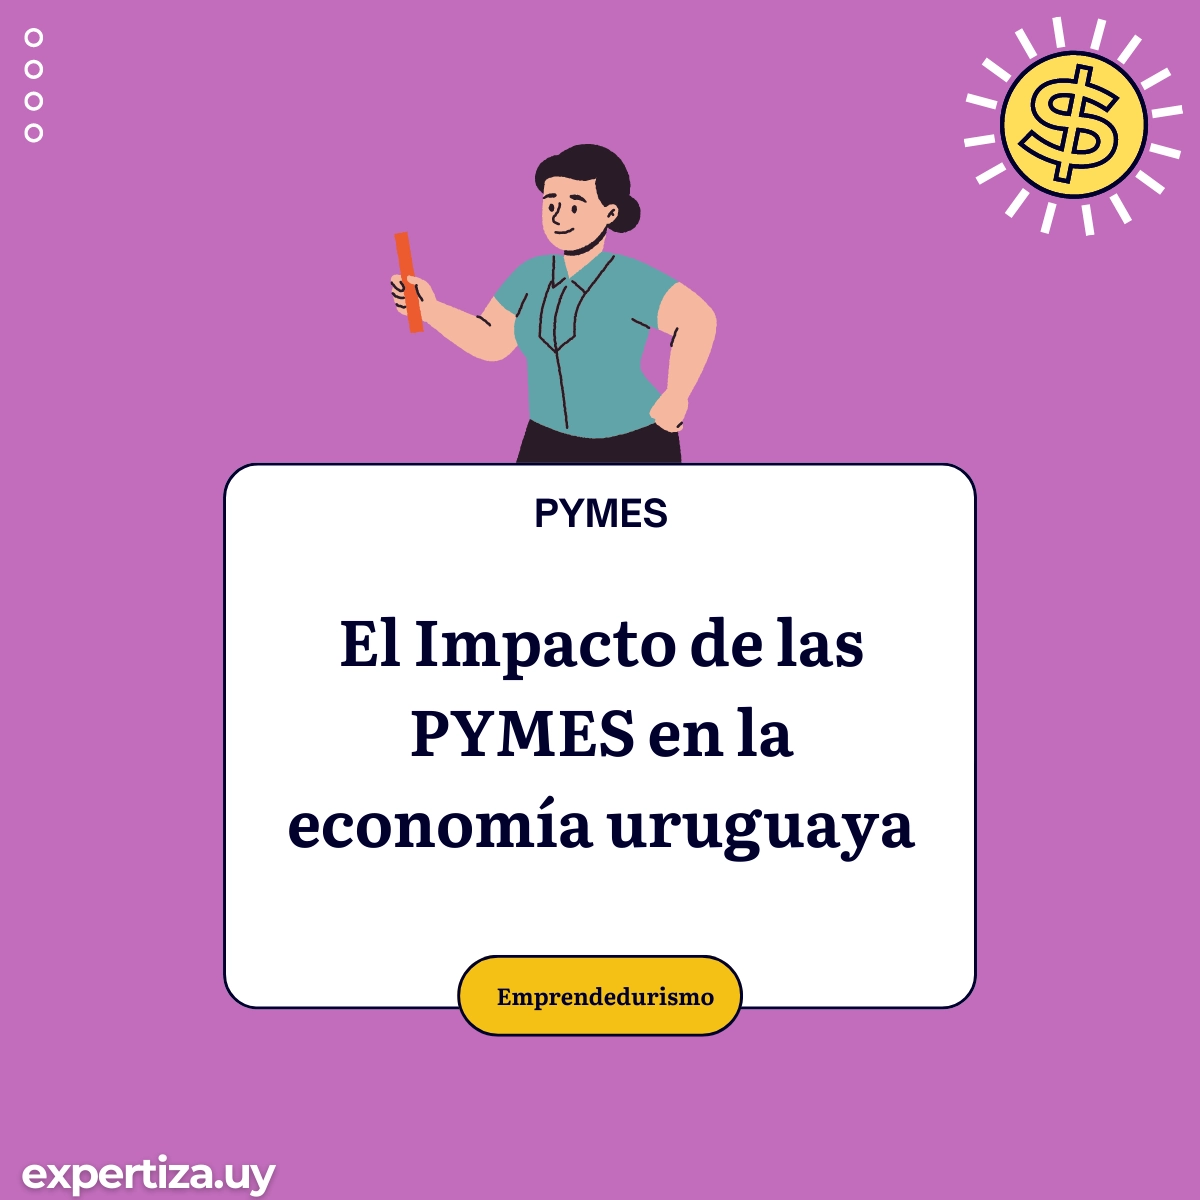 El Impacto de las PYMES en la economía uruguaya.